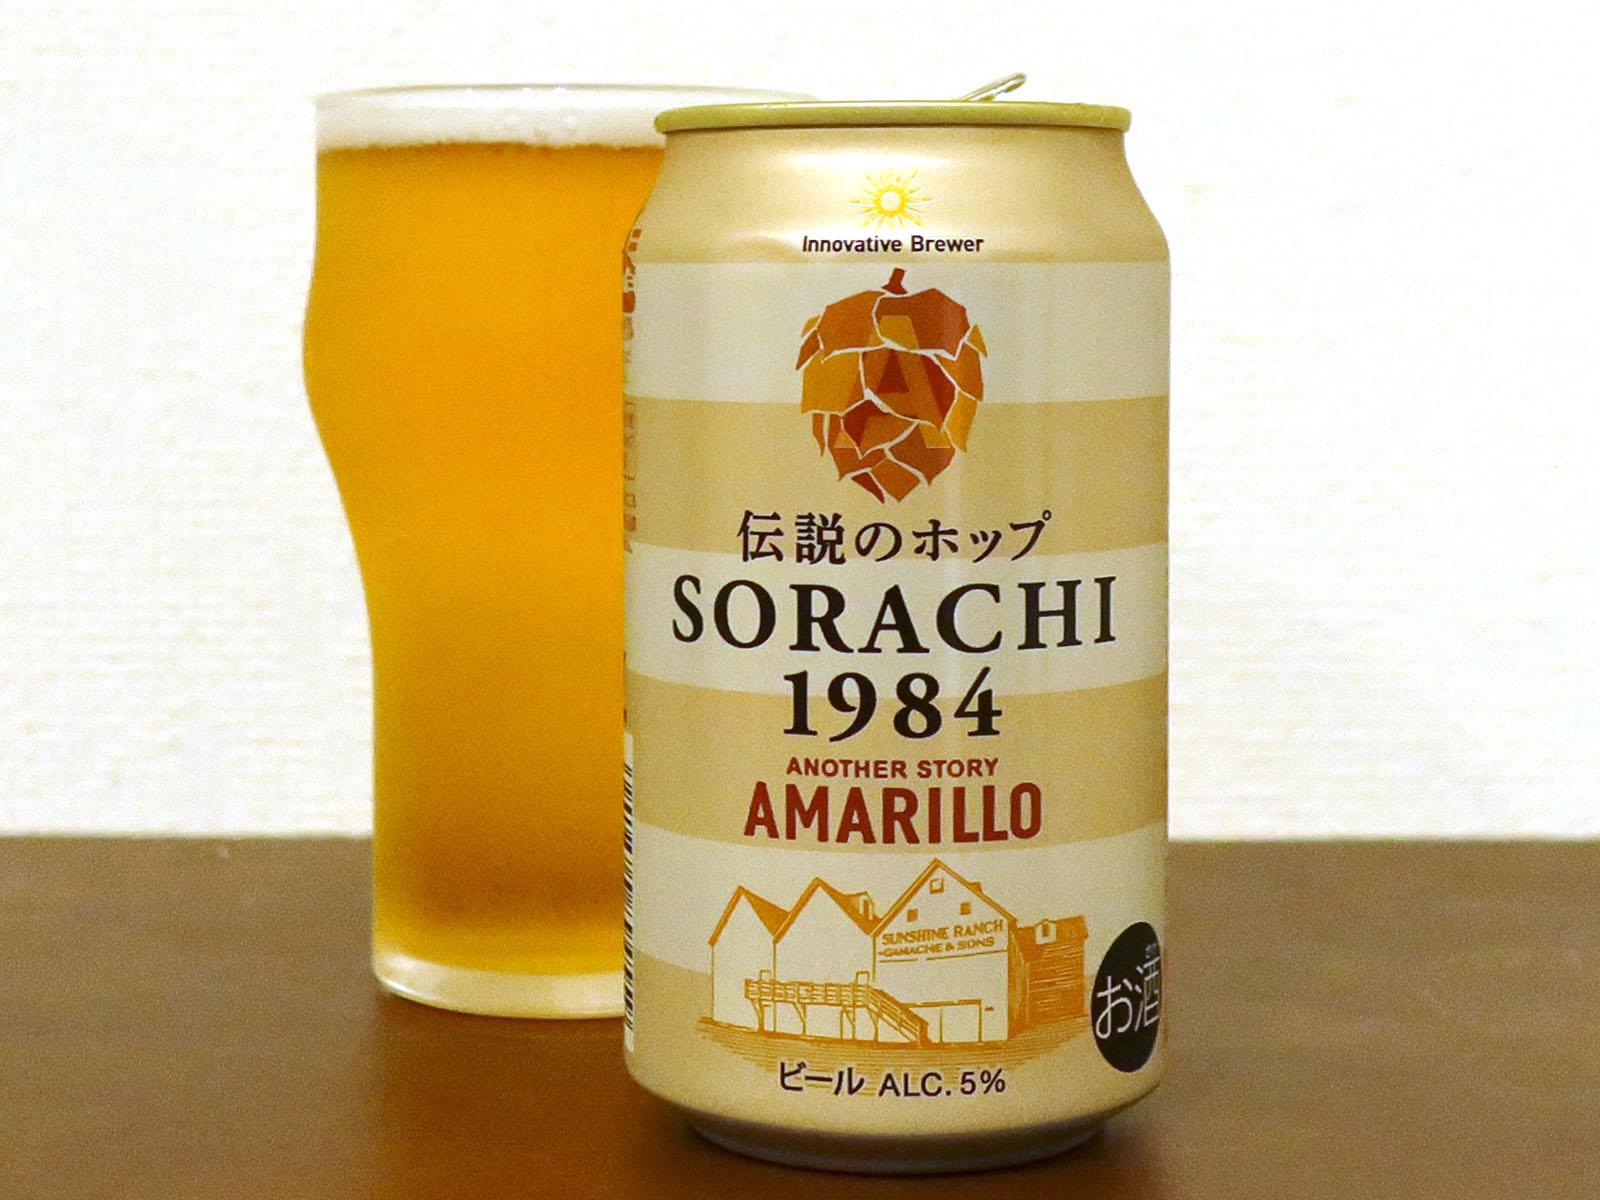 サッポロビール Innovative Brewer 伝説のホップ SORACHI1984 AMARILLO